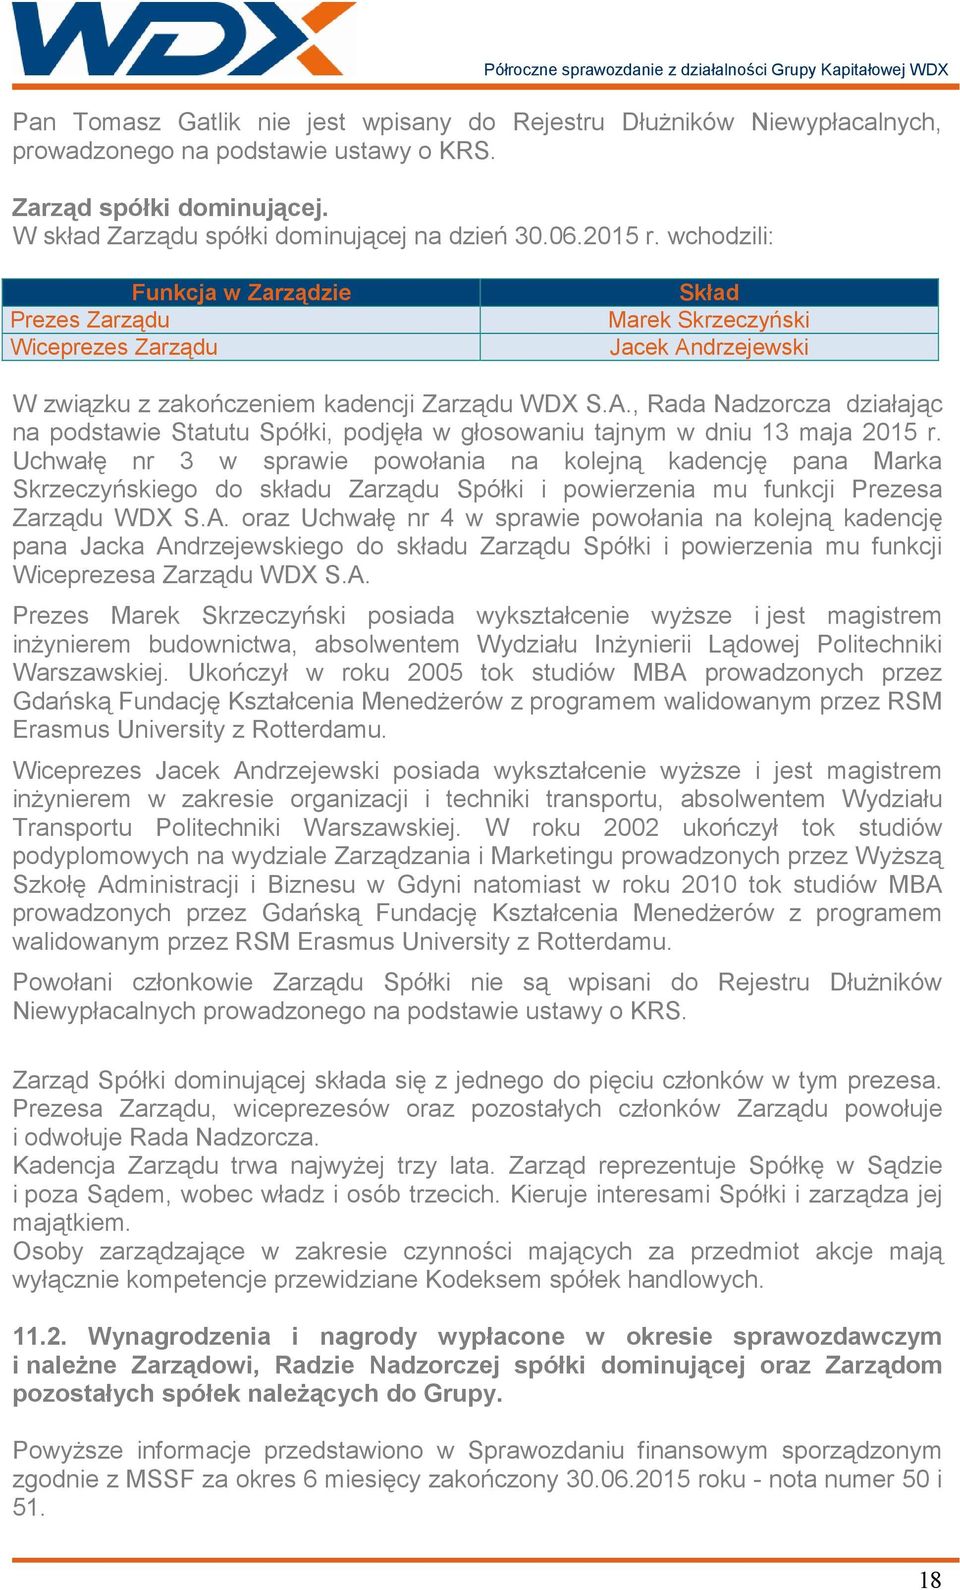 drzejewski W związku z zakończeniem kadencji Zarządu WDX S.A., Rada Nadzorcza działając na podstawie Statutu Spółki, podjęła w głosowaniu tajnym w dniu 13 maja 2015 r.